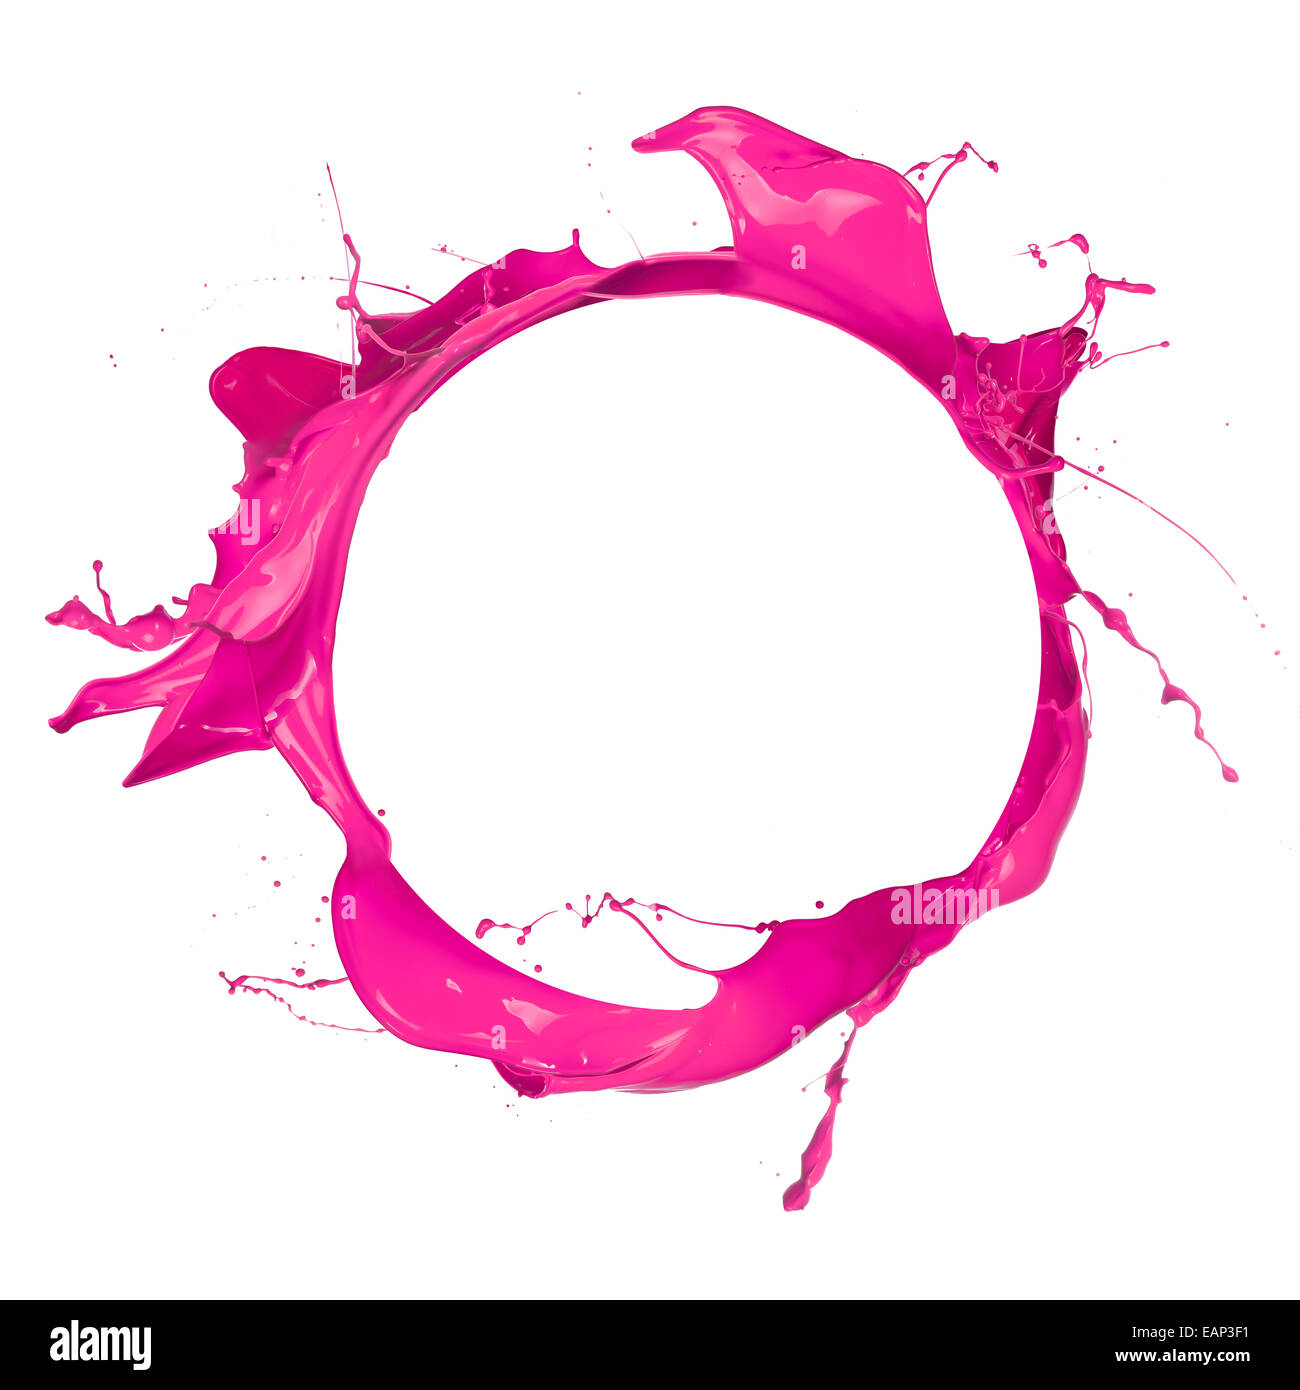 Cercle de peinture rose avec de l'espace libre pour le texte, isolé sur fond blanc Banque D'Images